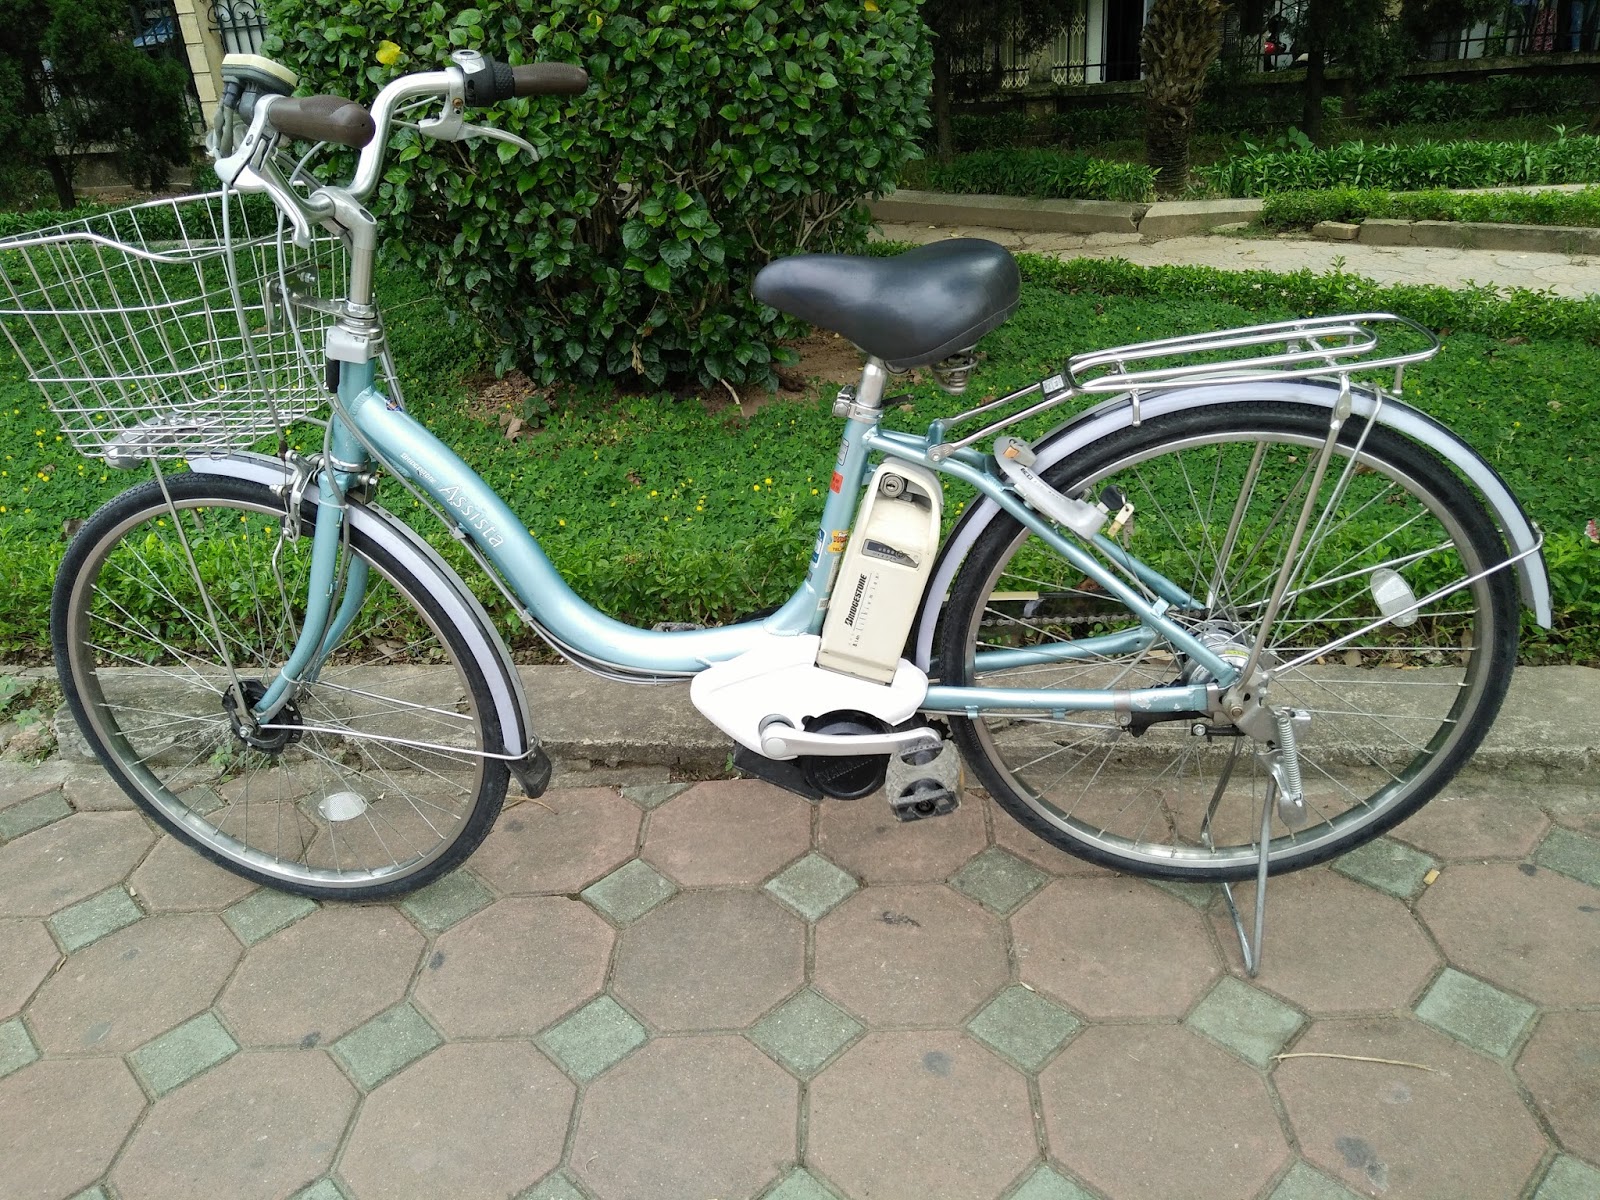 Xe đạp điện trợ lực là gì? Có nên mua xe điện trợ lực không?